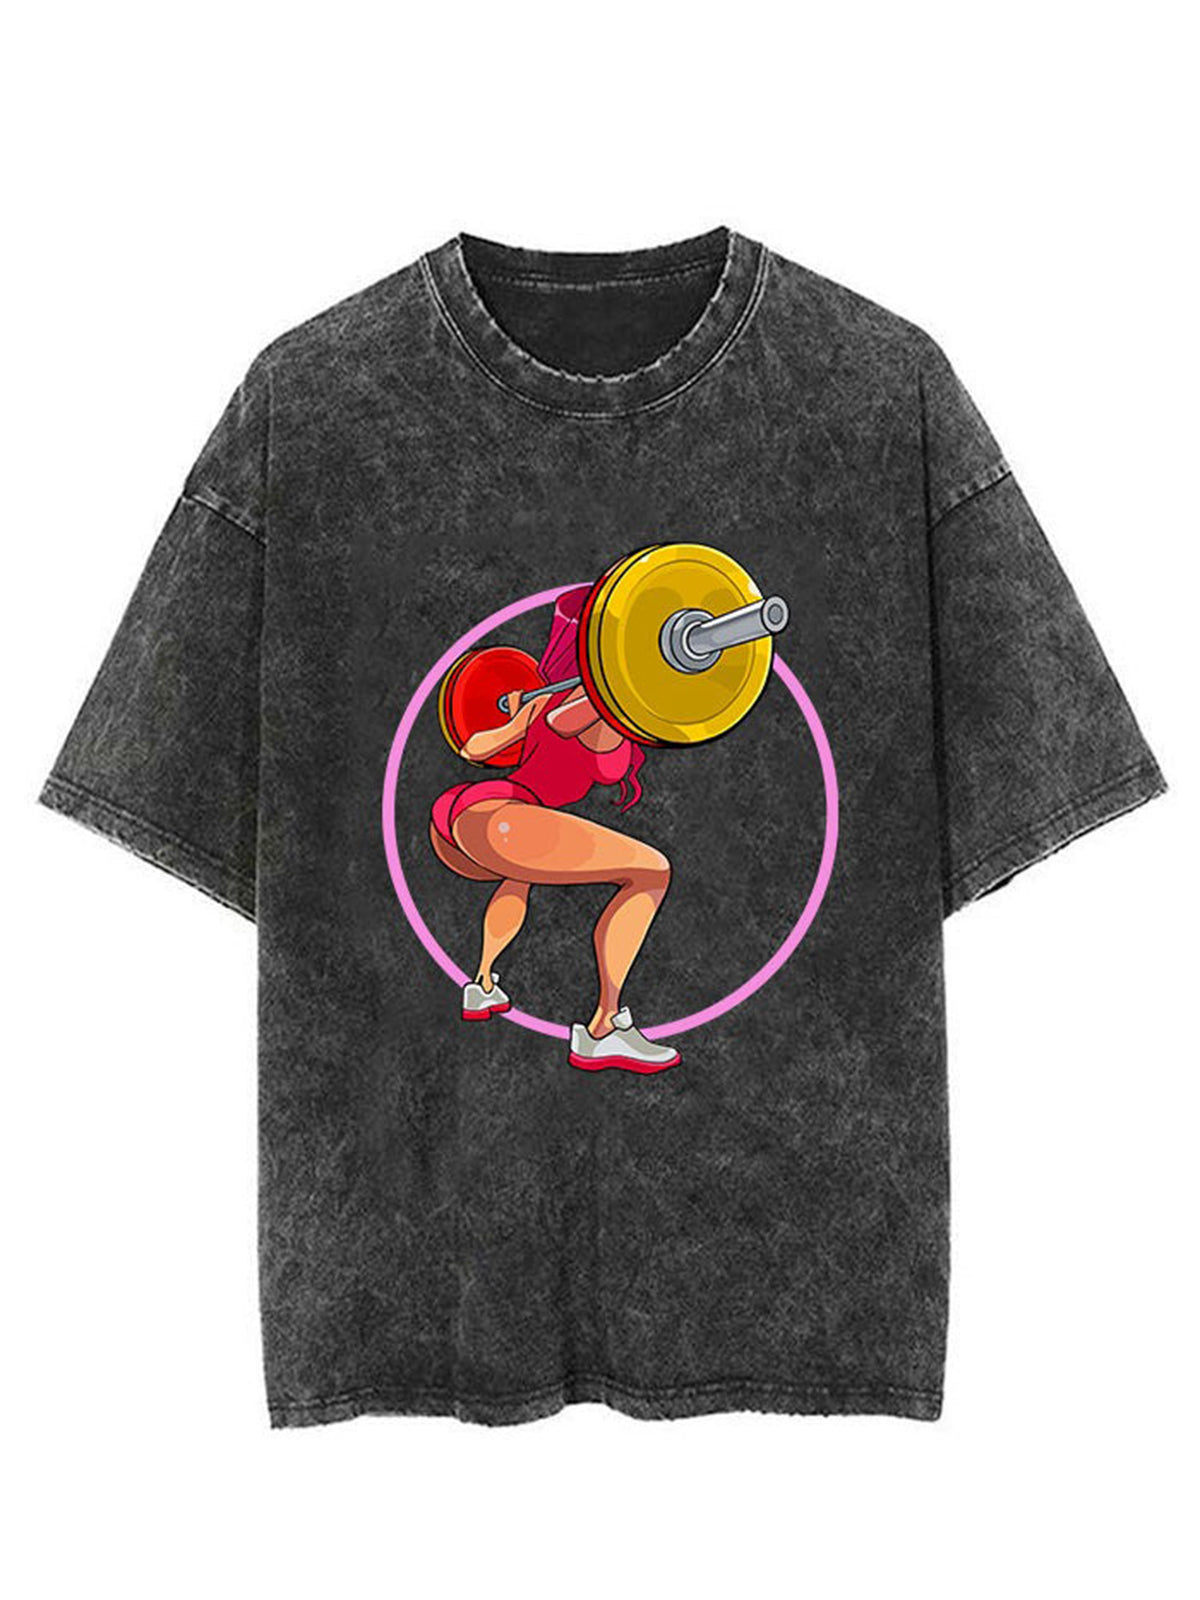 Weightlifting Girl Unisex Short Sleeve Washed T-Shirt